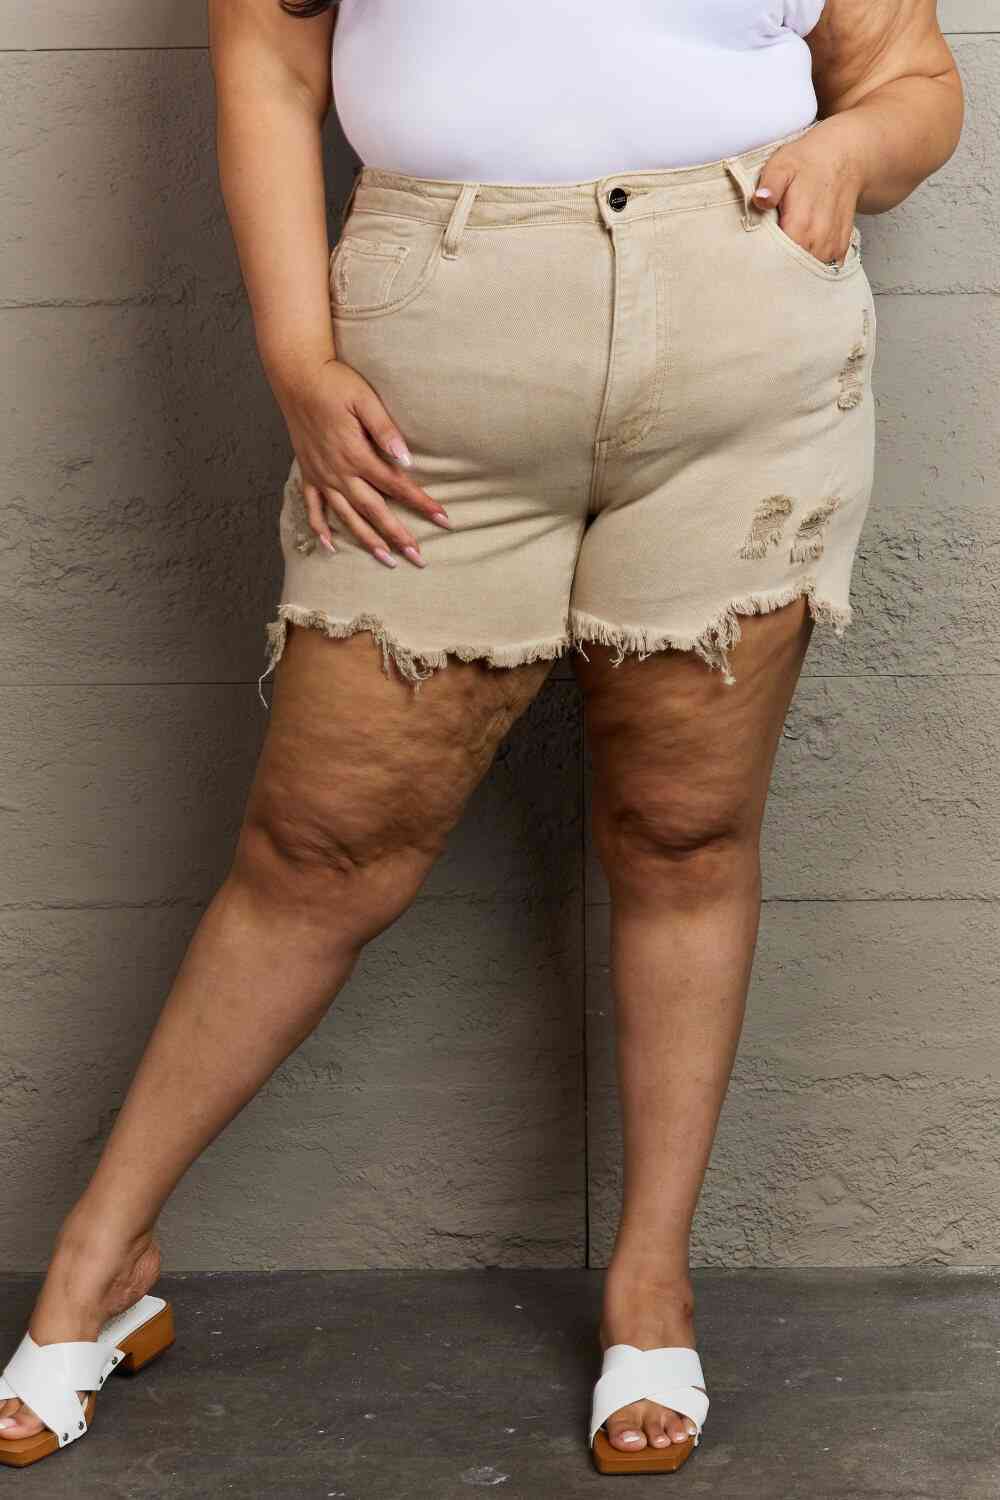 RISEN Katie Pantalones cortos desgastados de cintura alta de tamaño completo en color arena